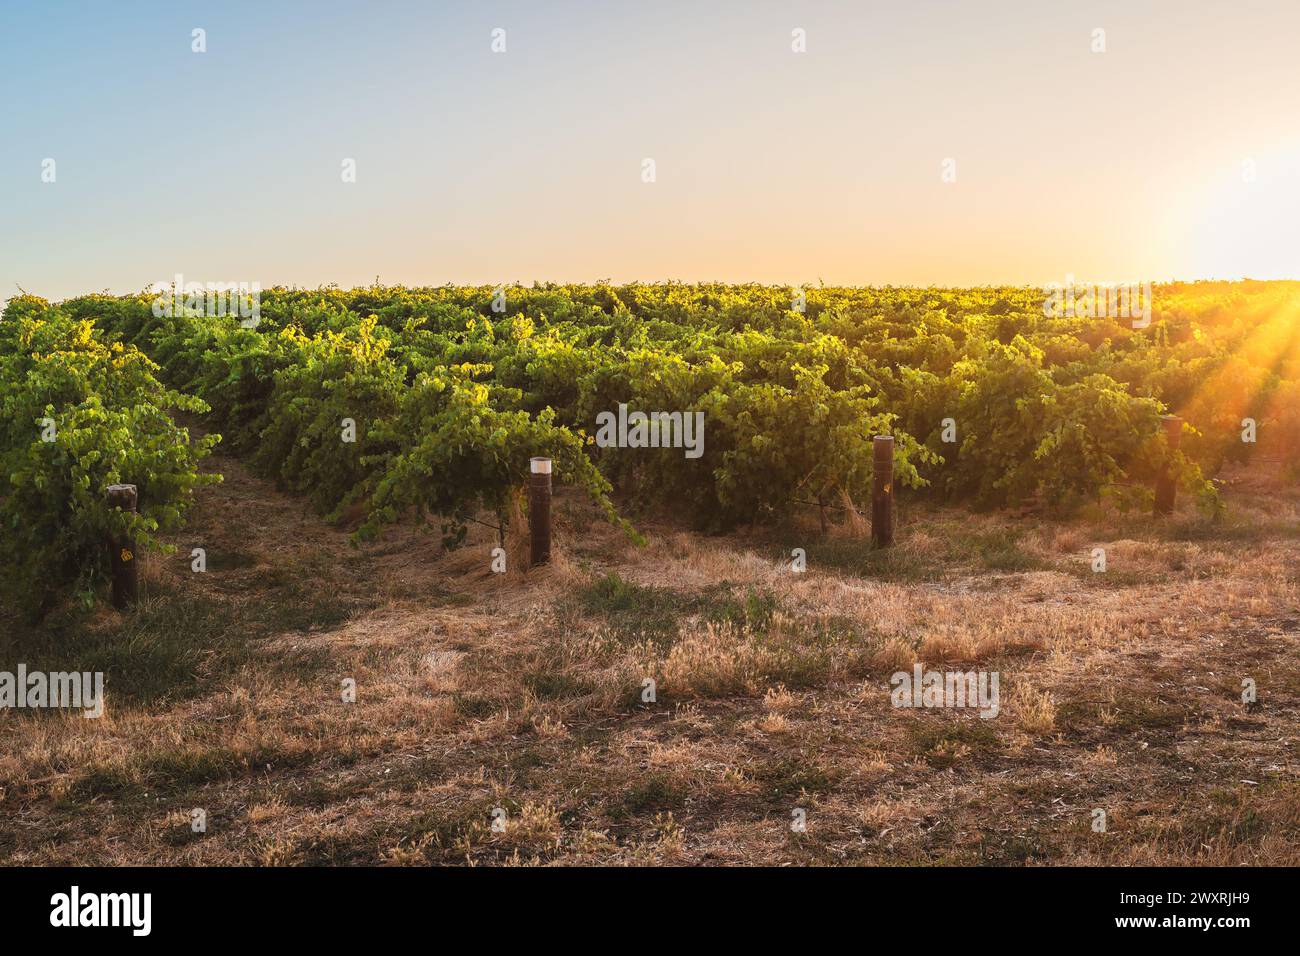 Malerische Barossa Valley Weinberge bei Sonnenuntergang von der Straße aus gesehen während der Weintour. Barossa Valley ist eine der bekanntesten Weinregionen Australiens Stockfoto